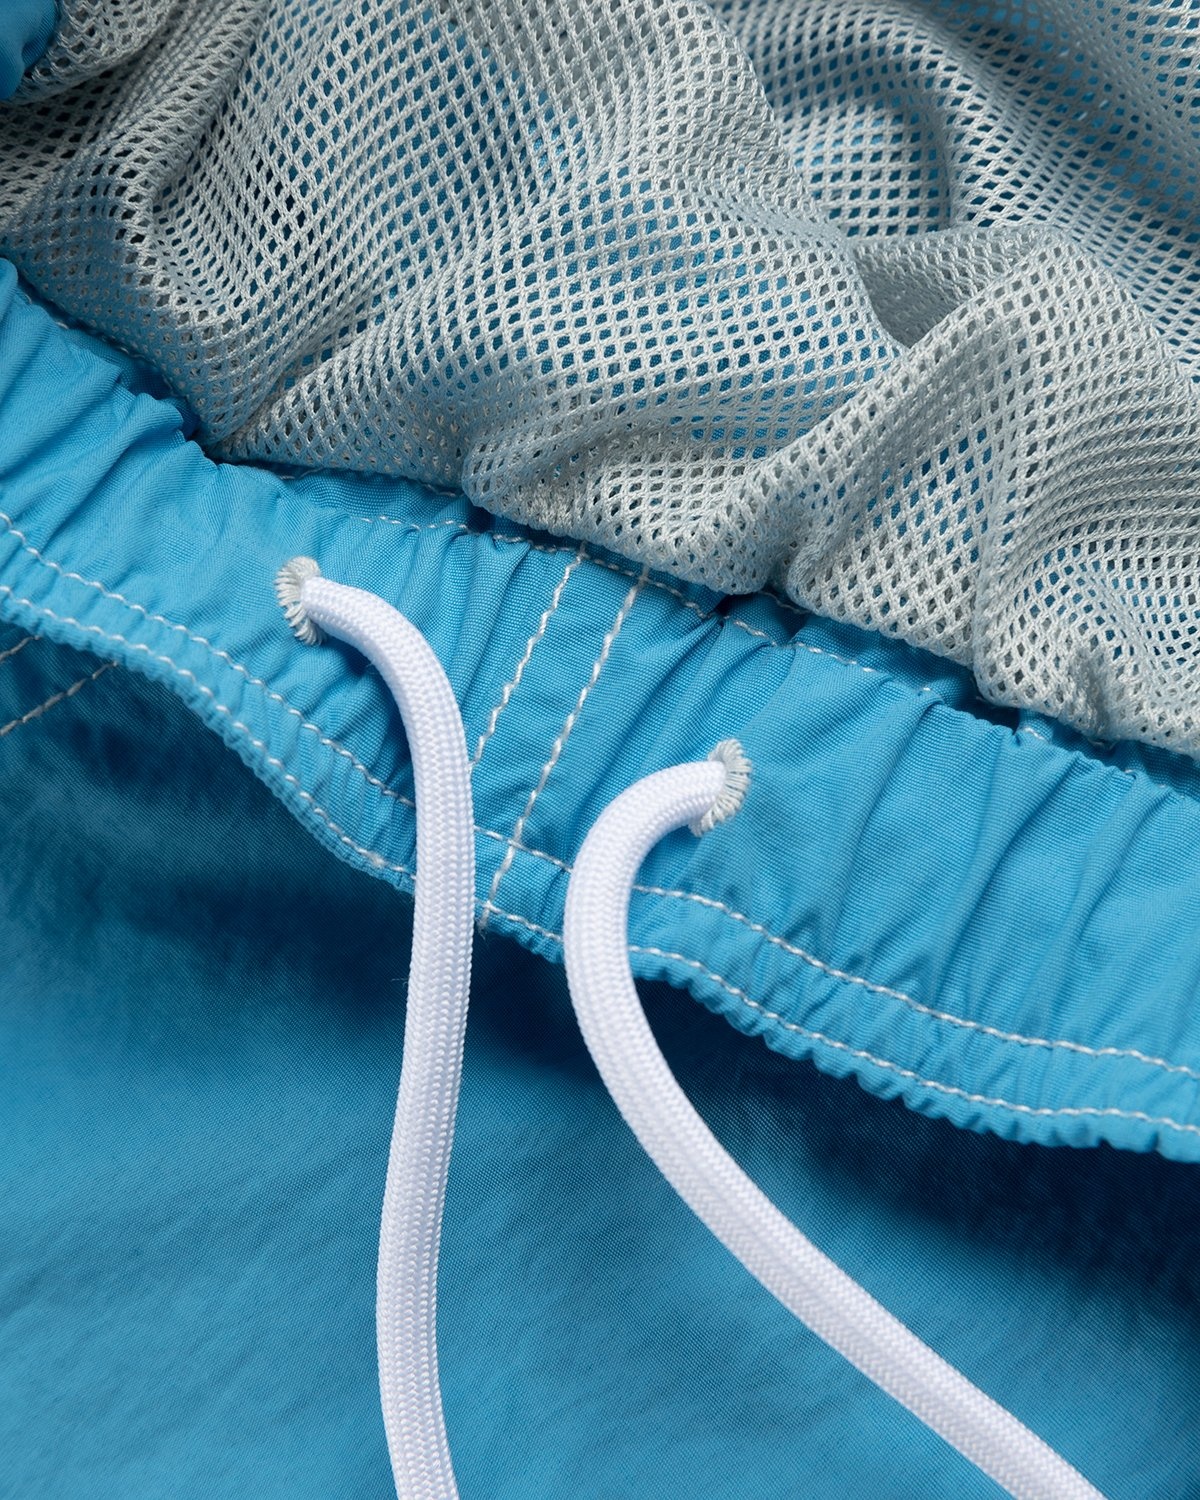 Highsnobiety – Contrast Brushed Nylon Water Shorts Blue - Active Shorts - Blue - Image 5